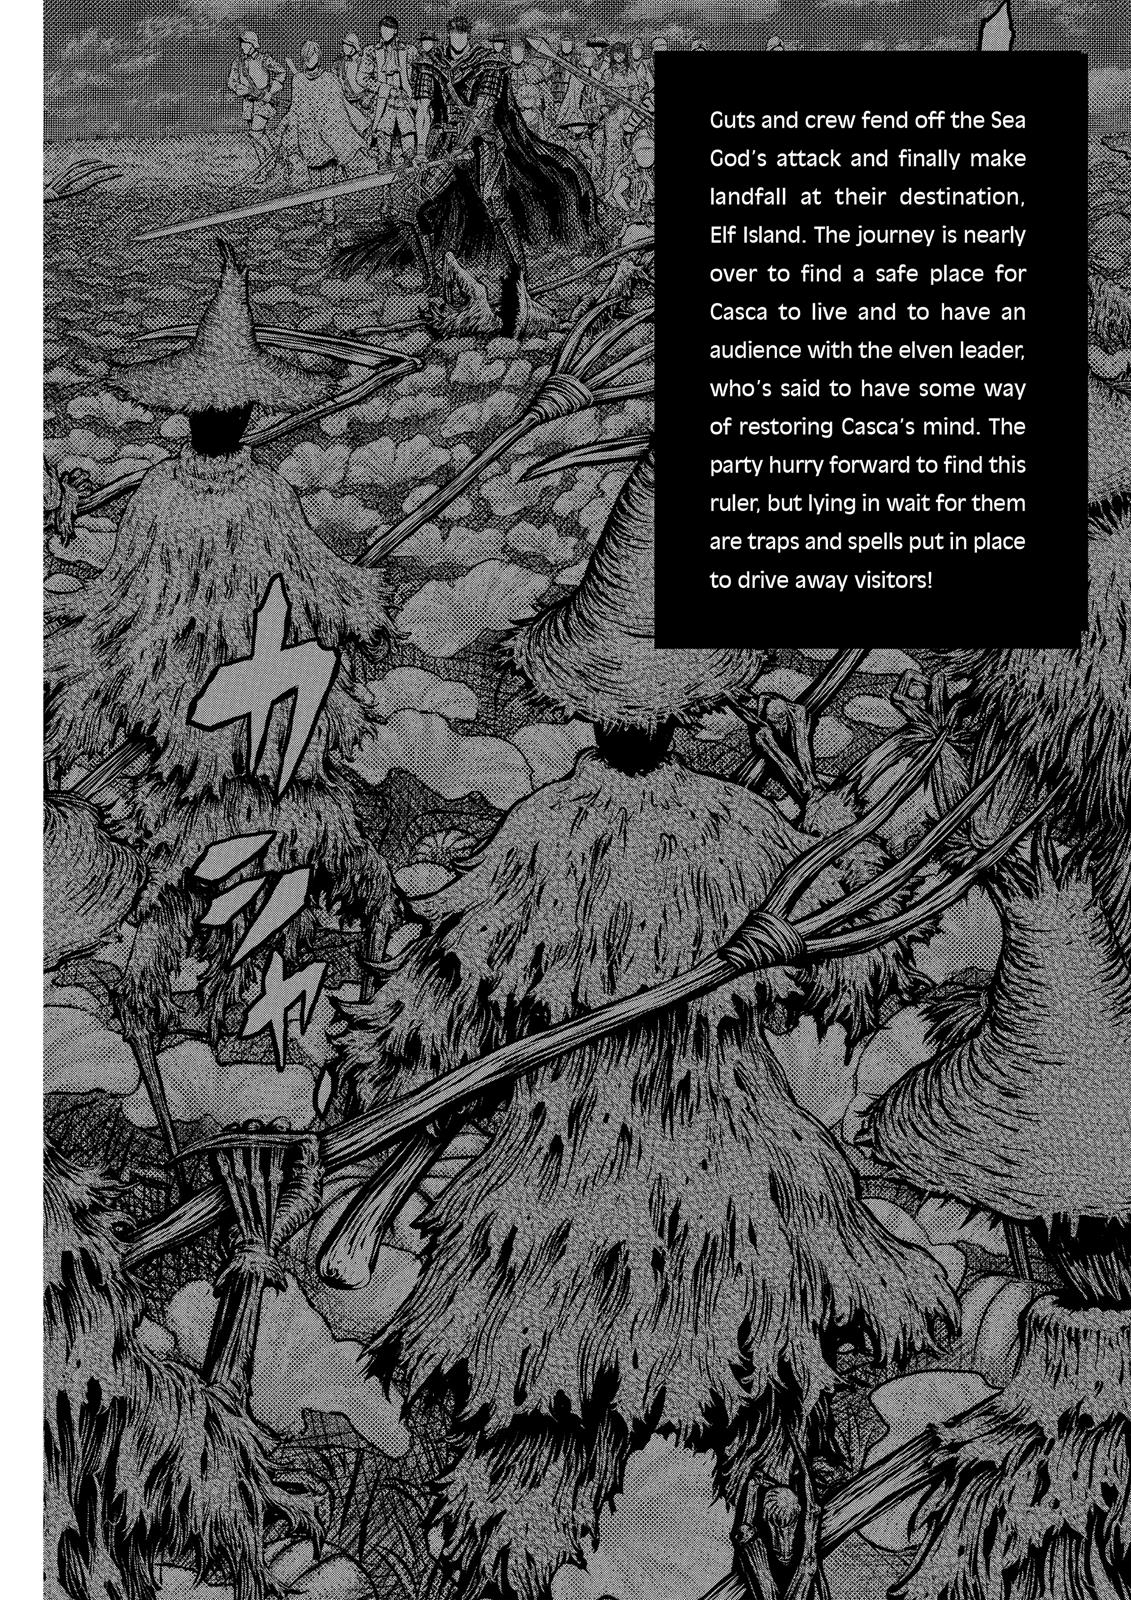 Berserk Manga Chapter 343 image 09